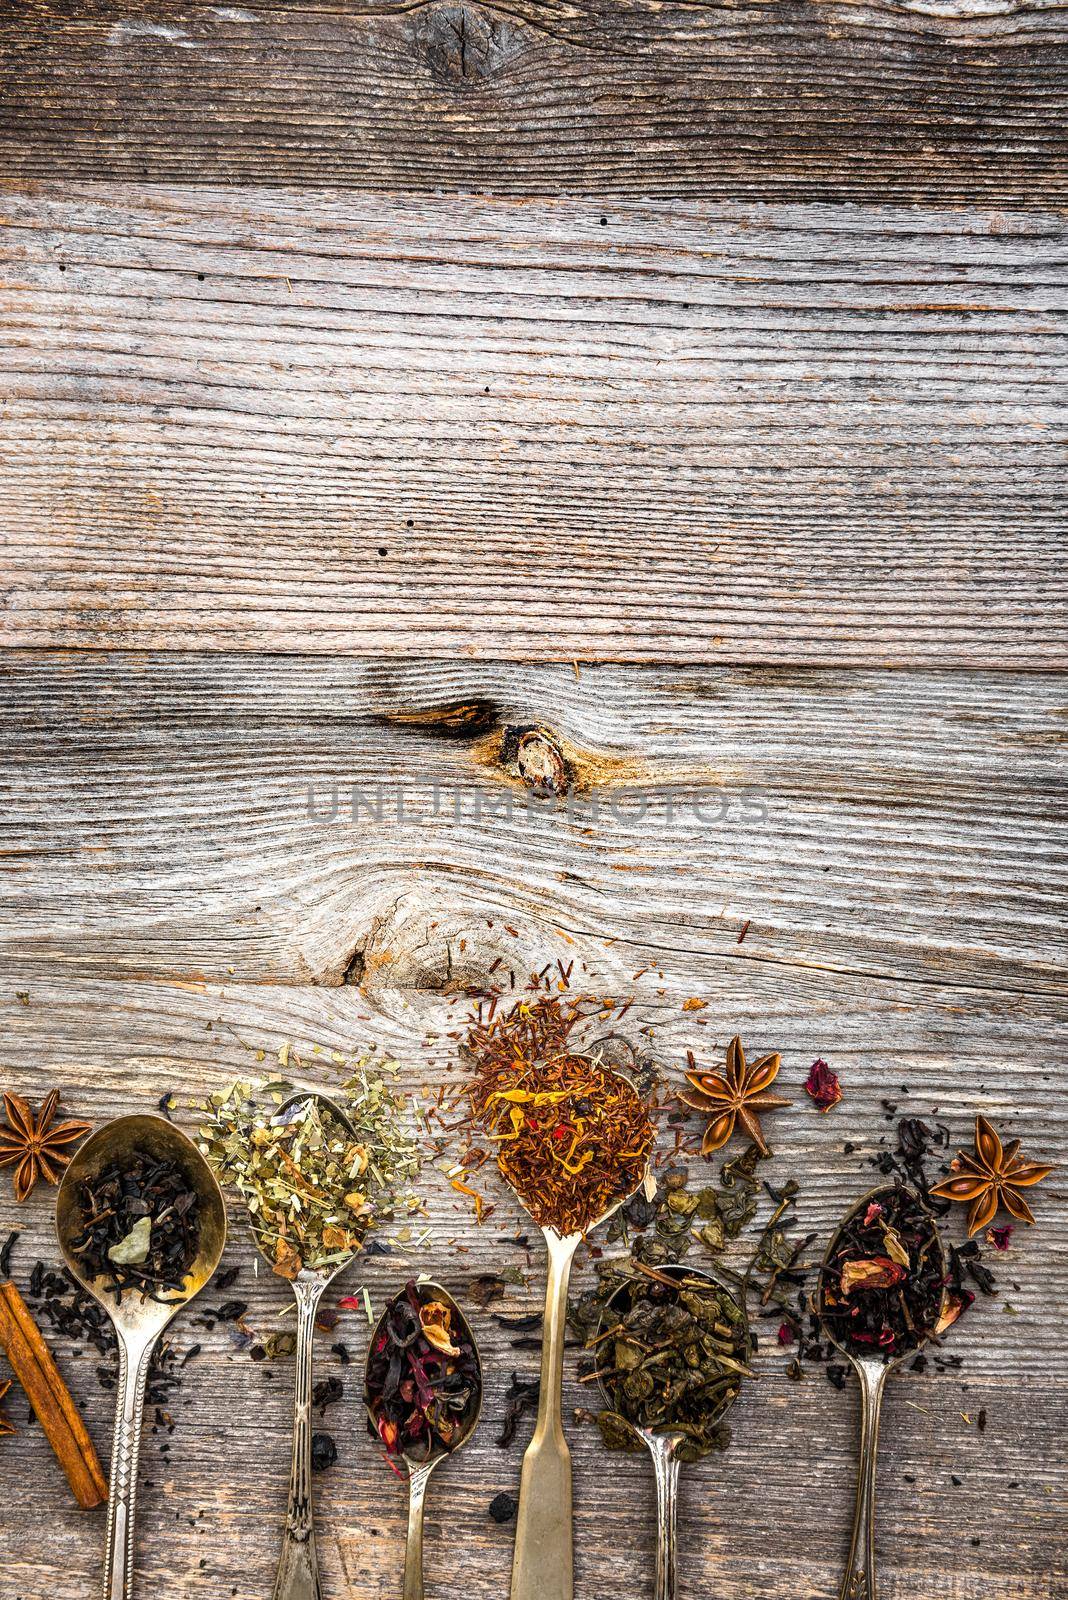 dry teas on wooden background by GekaSkr